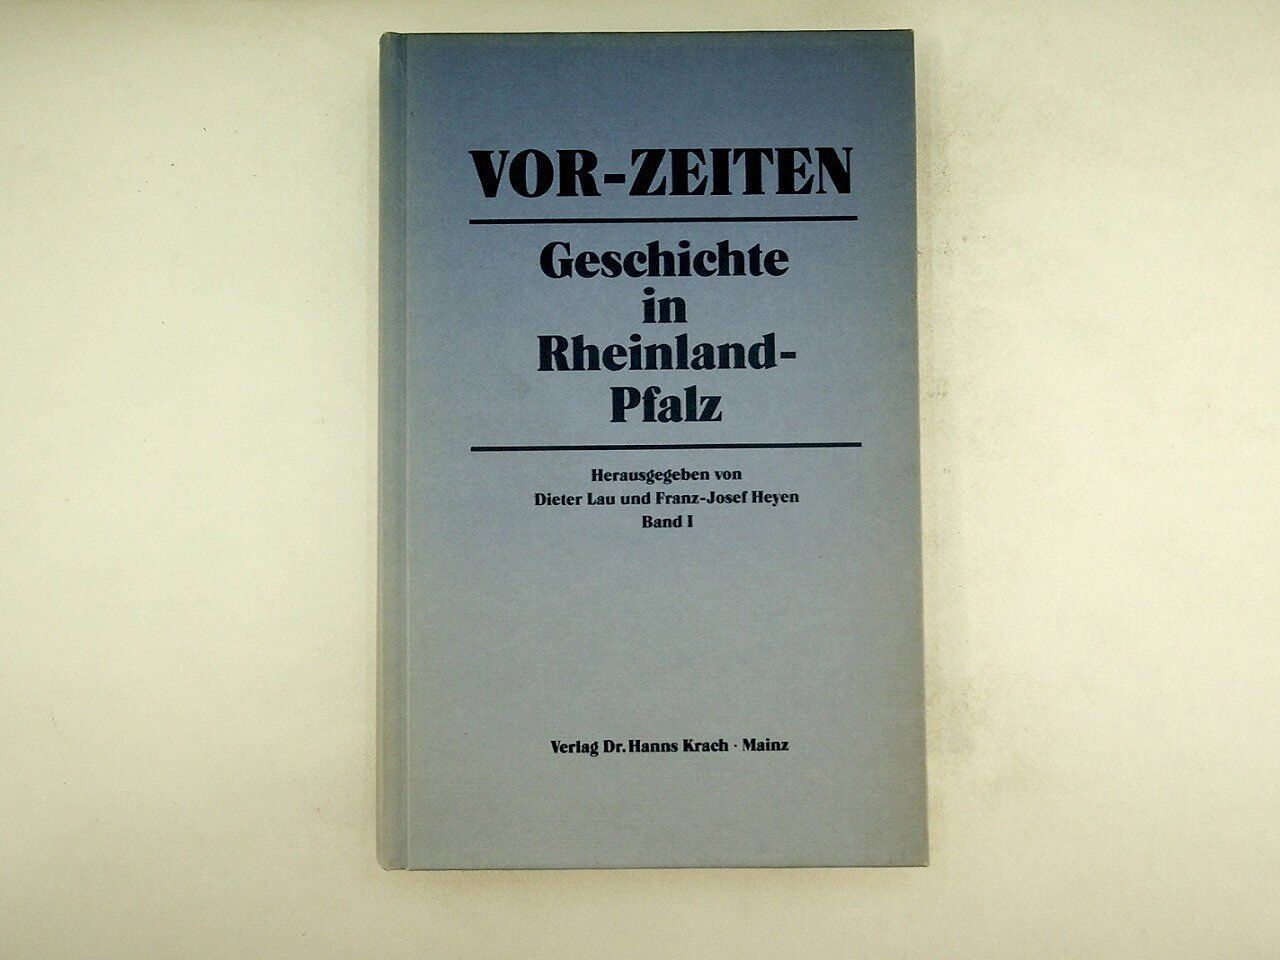 Dieter Lau - Vor-Zeiten - Geschichte in Rheinland-Pfalz (Band 1) - 1985 - Dieter Lau